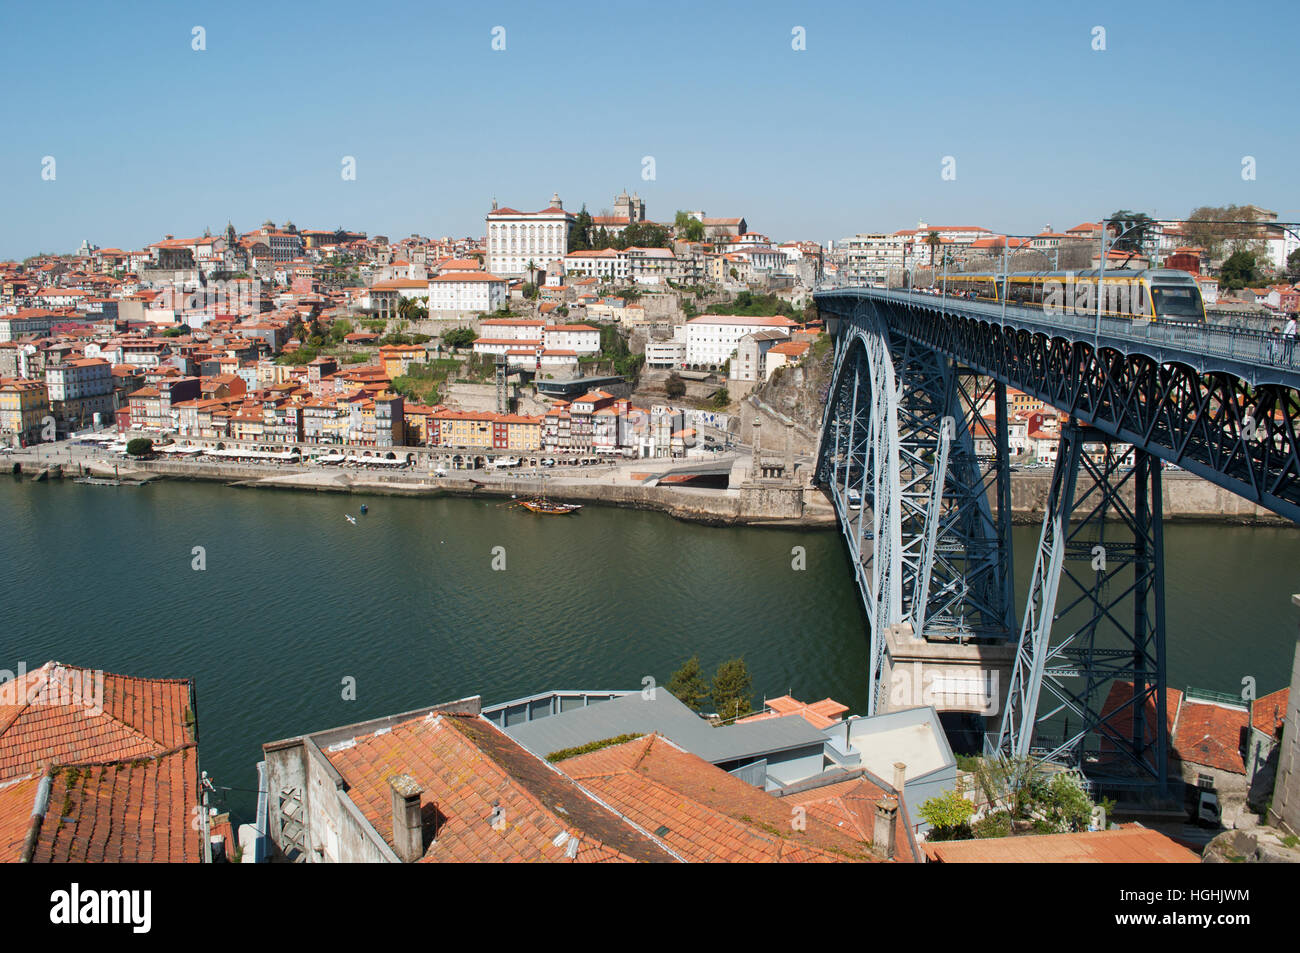 Le Portugal, l'Europe : l'horizon de Porto, avec vue sur le pont Luiz I (Ponte Dom Luís I) sur le fleuve Douro entre Porto et Vila Nova de Gaia Banque D'Images